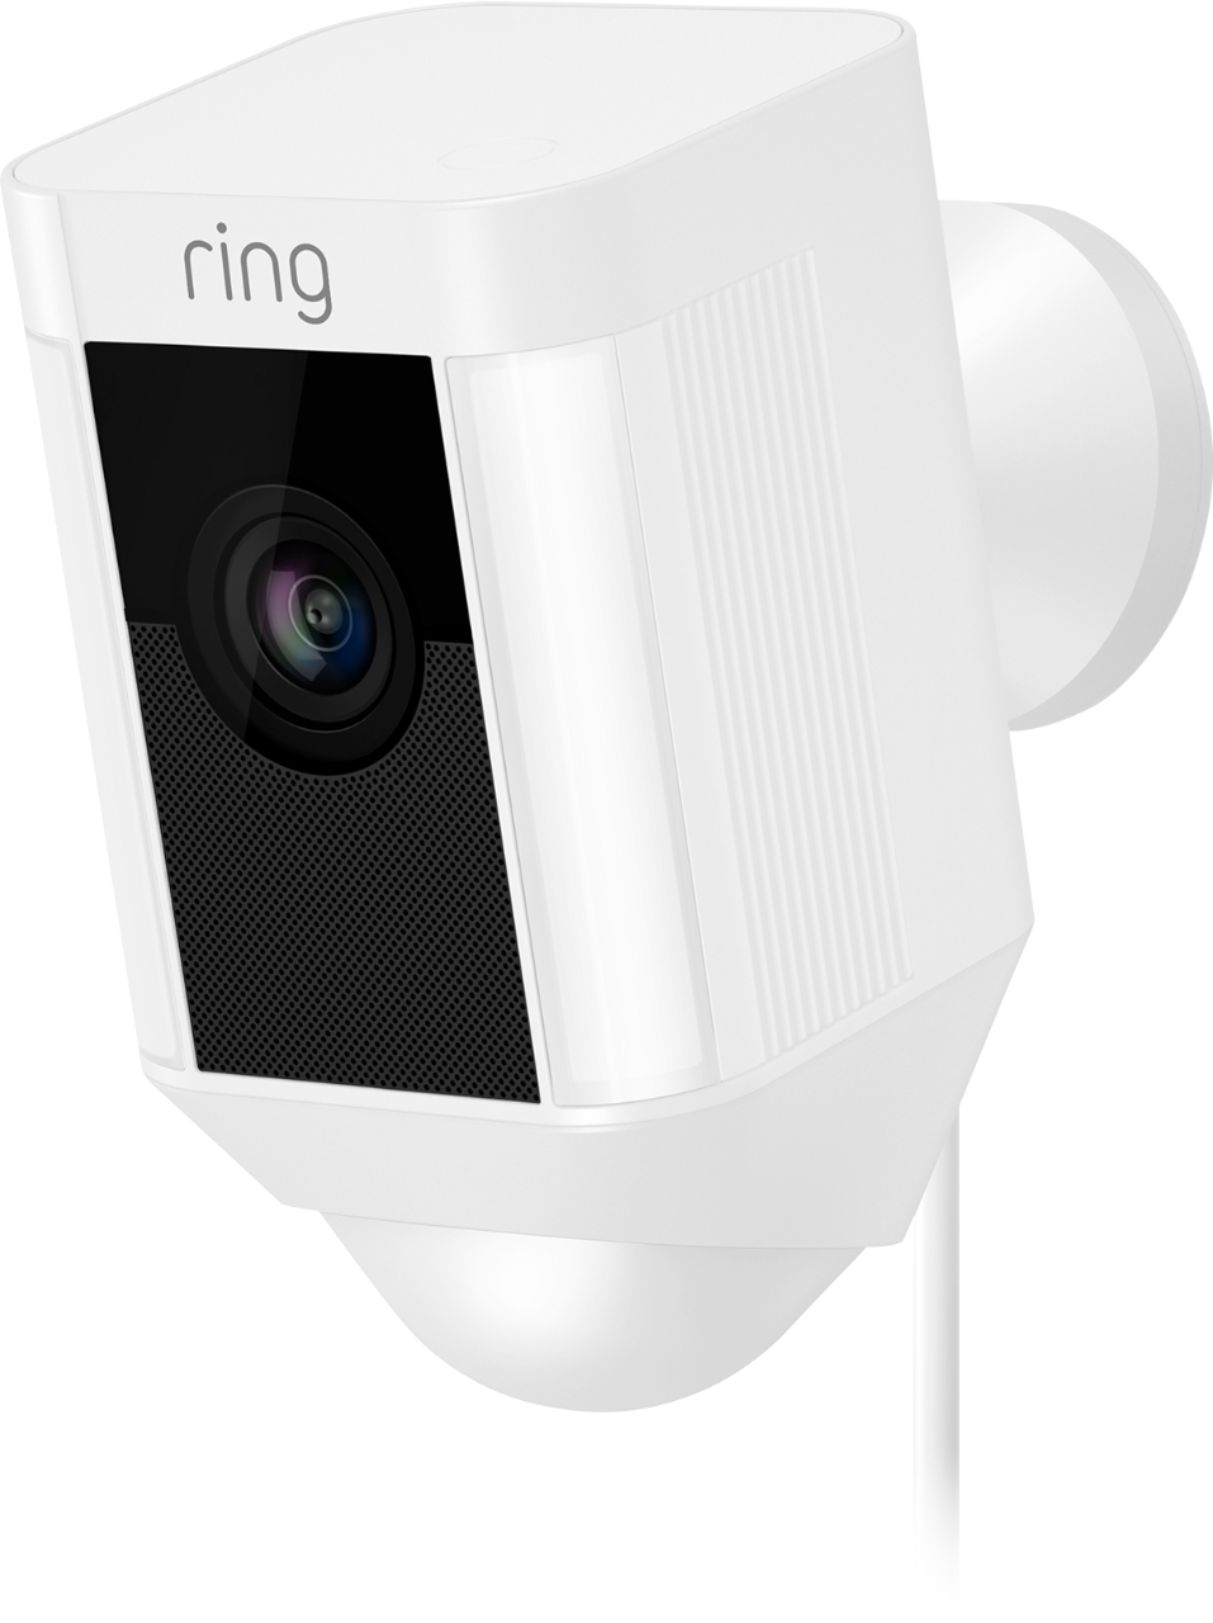 Ring Spotlight Cam (Plug-In)- White White 8SH1P7-WEN0 - Best